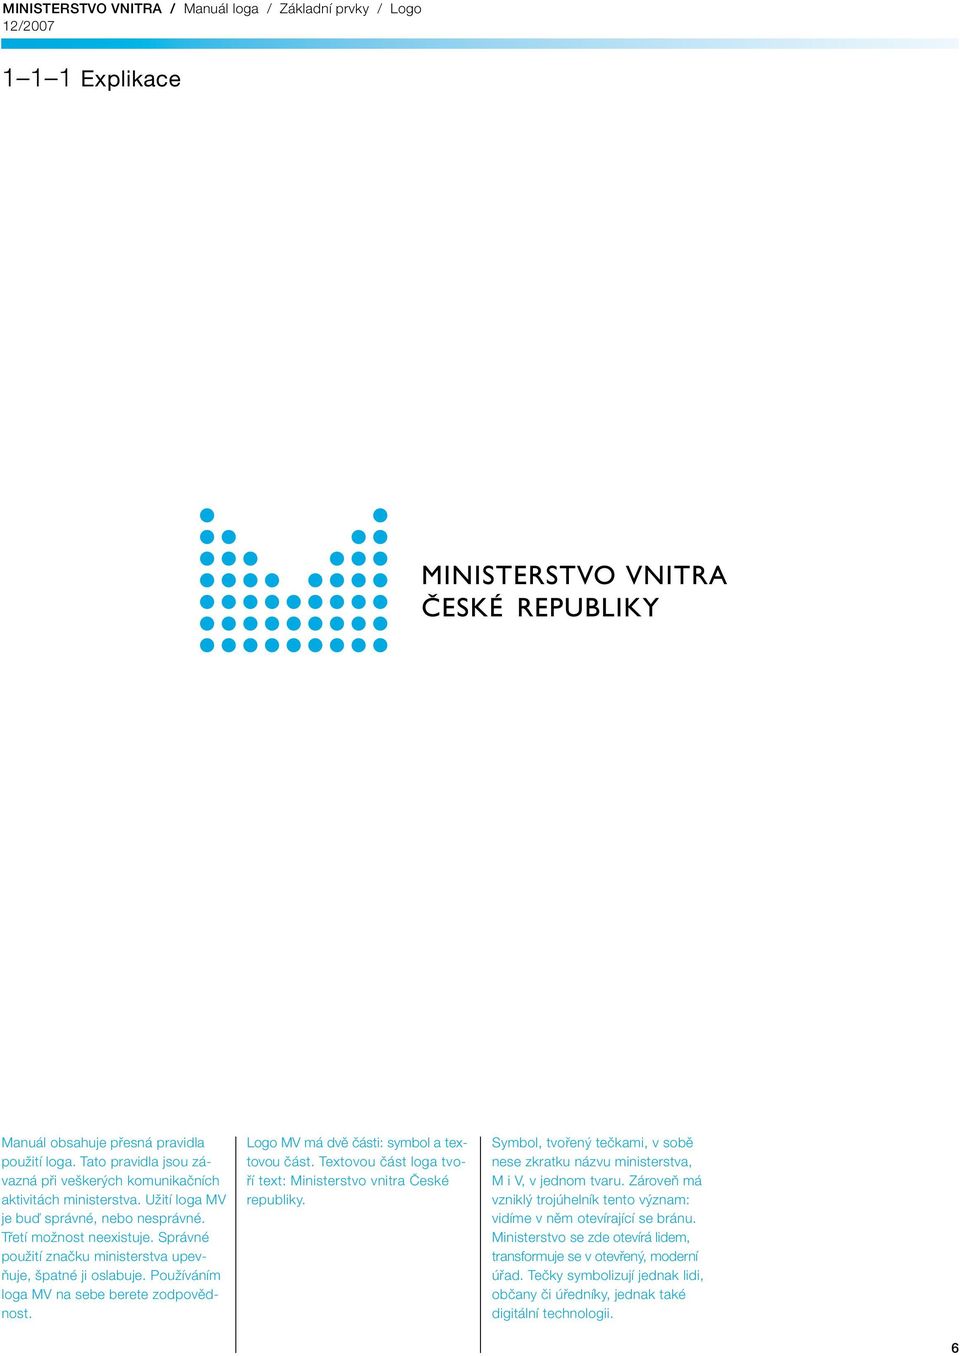 Logo MV má dvě části: symbol a textovou část. Textovou část loga tvoří text: Ministerstvo vnitra České republiky.